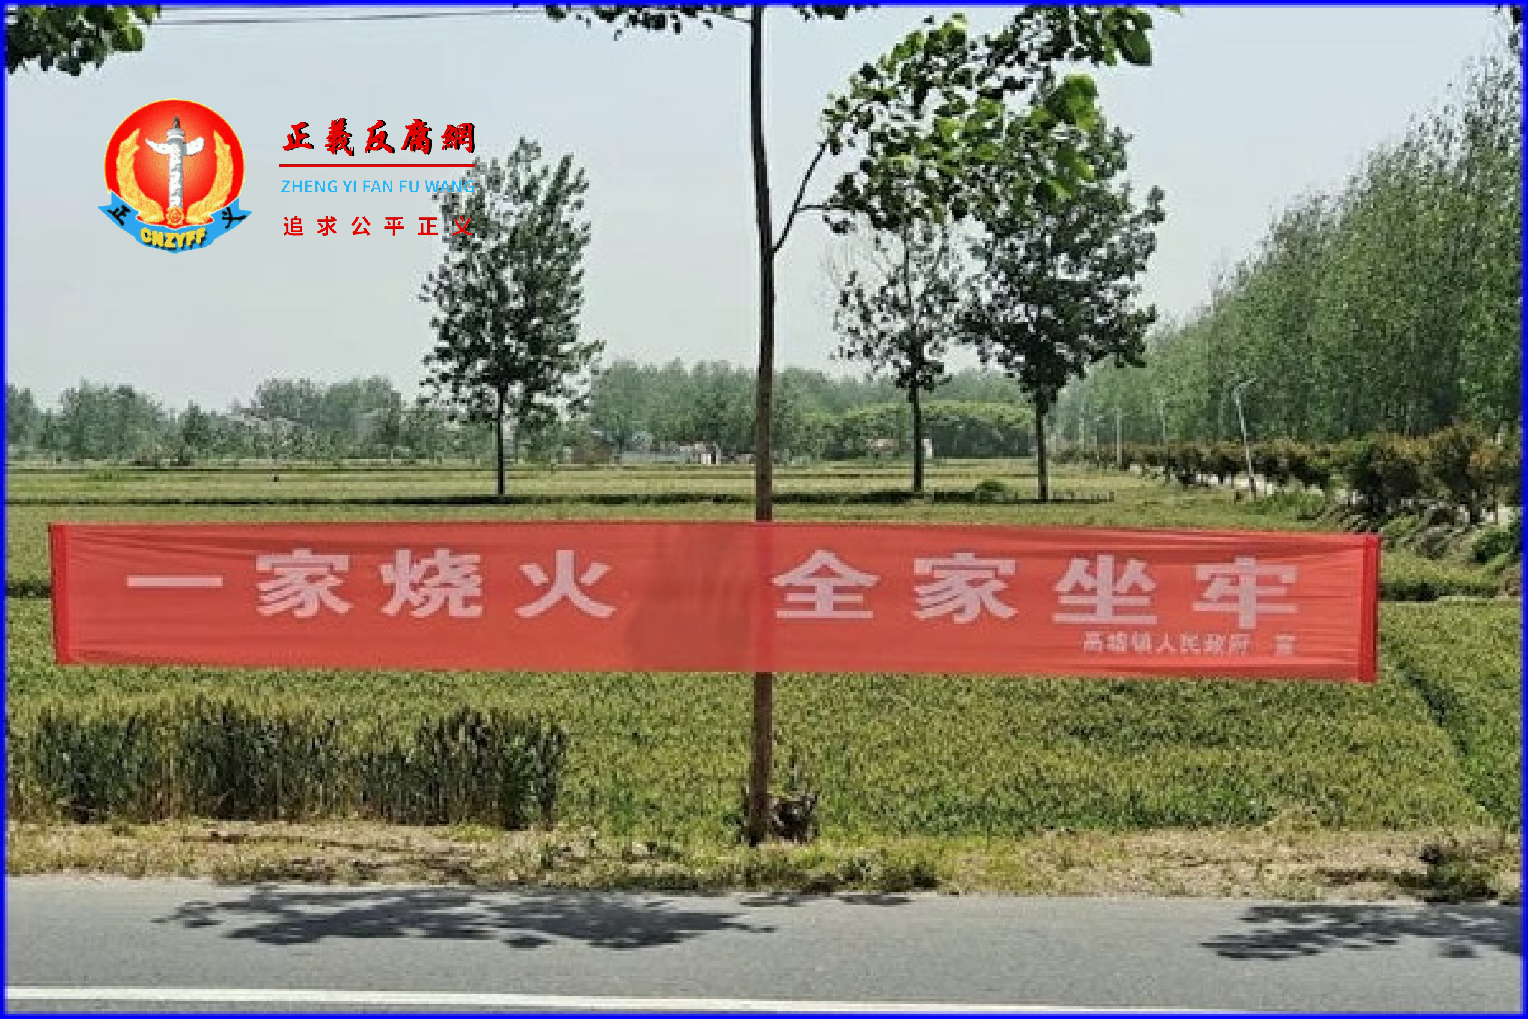 江苏省地方政府悬挂禁烧秸秆的横幅引起争议，网民指“这是连坐”。.png